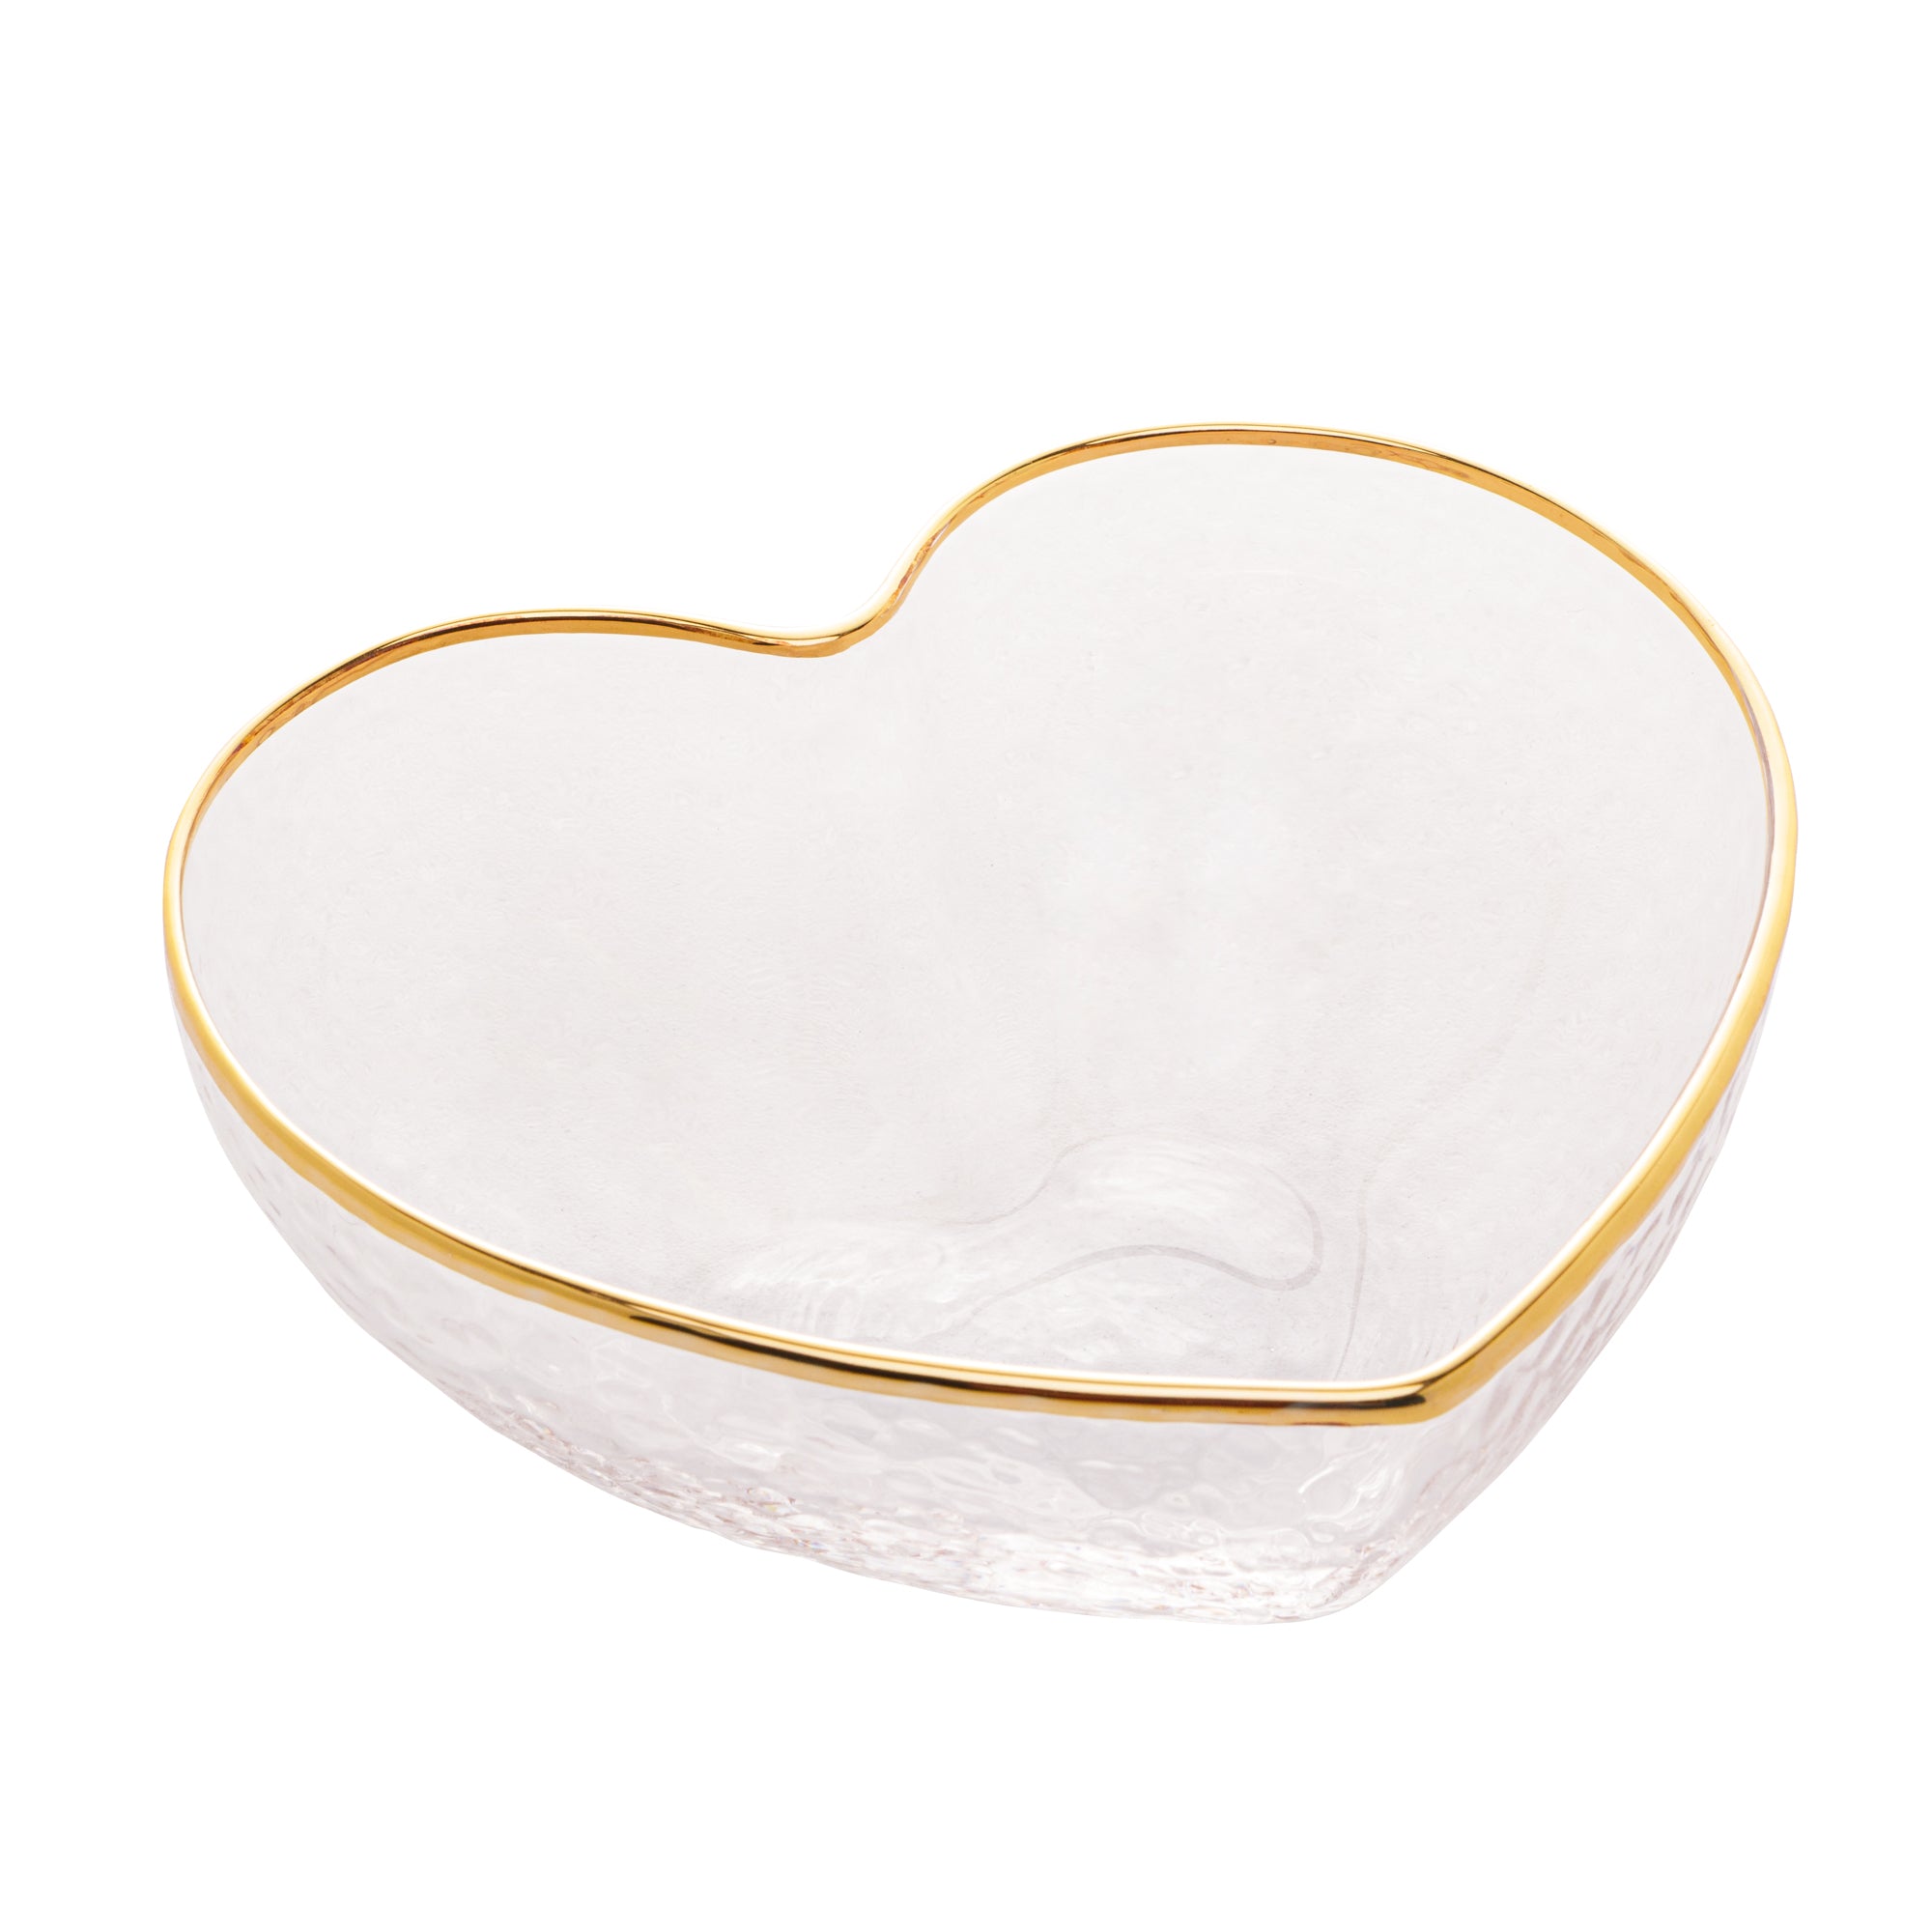 Bowl Coração com Borda Dourada - 15cm